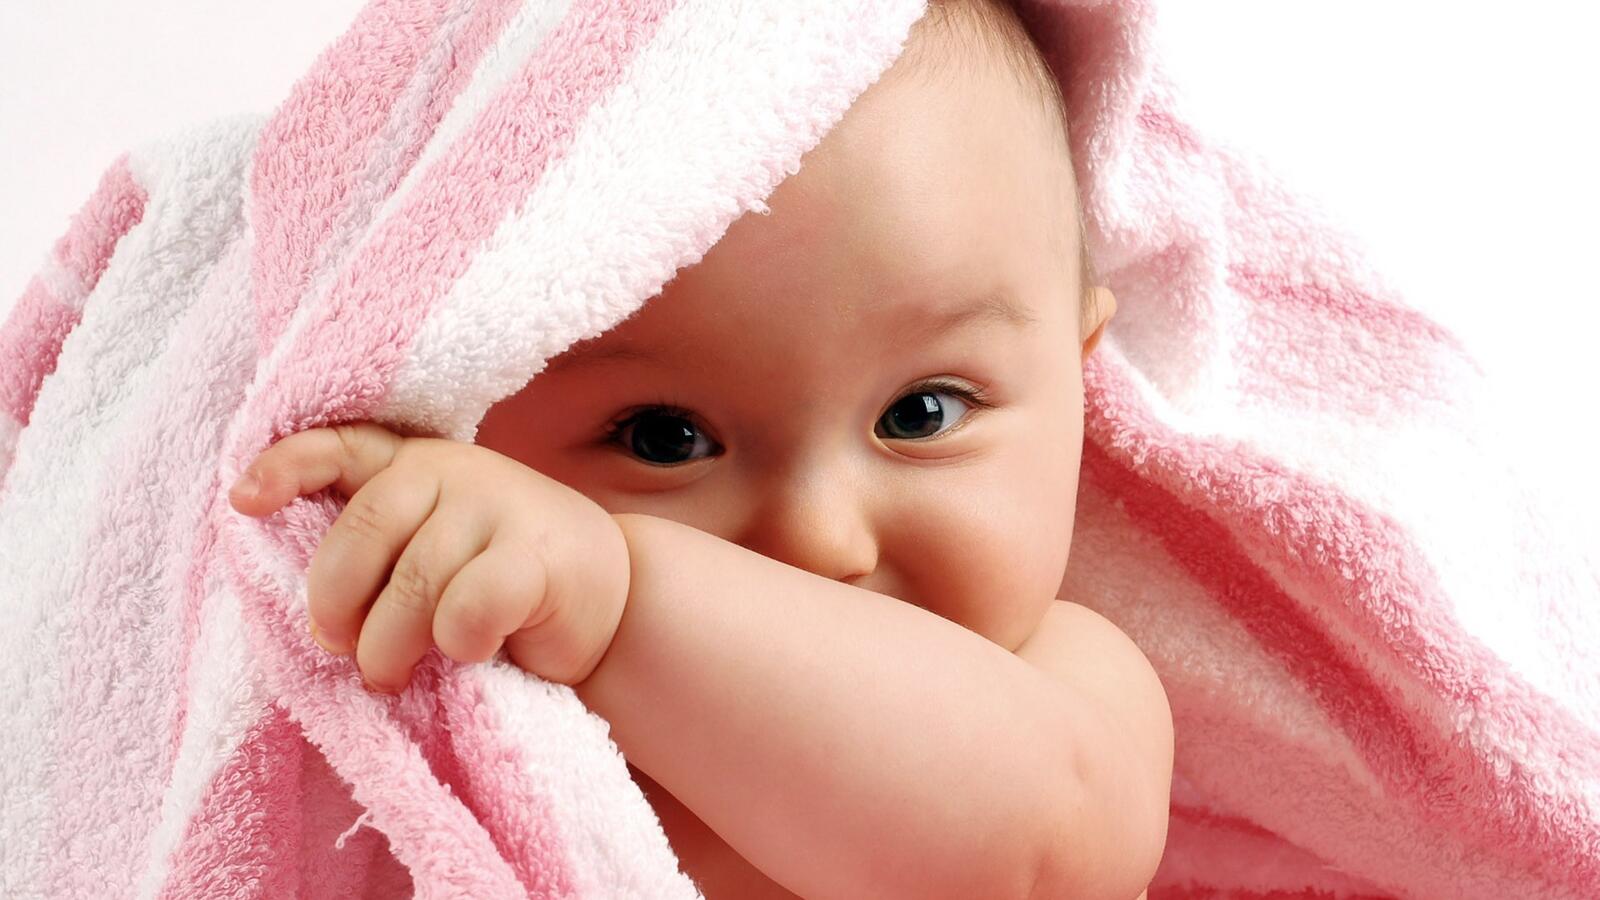 Wallpapers towel baby hand on the desktop